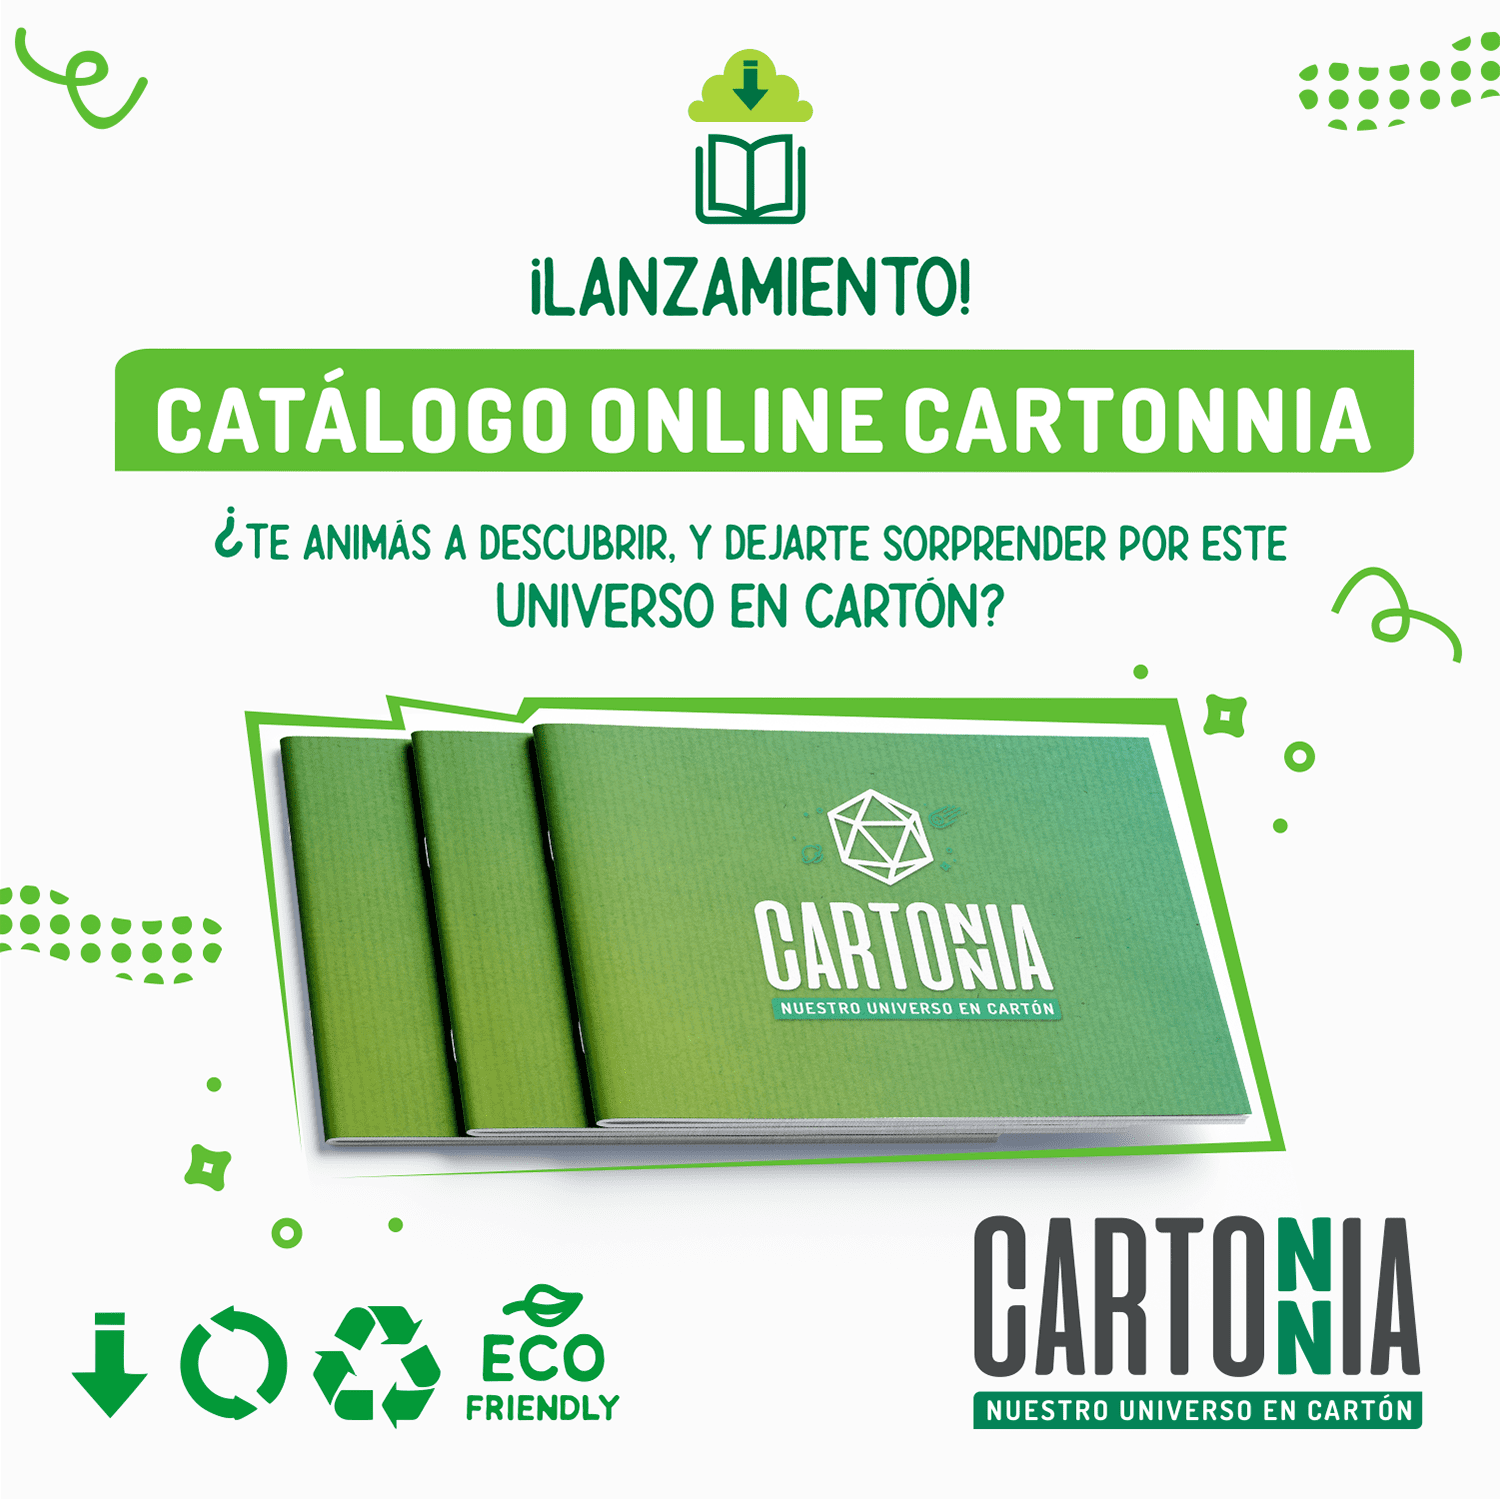 CATÁLOGO ONLINE CARTONNIA